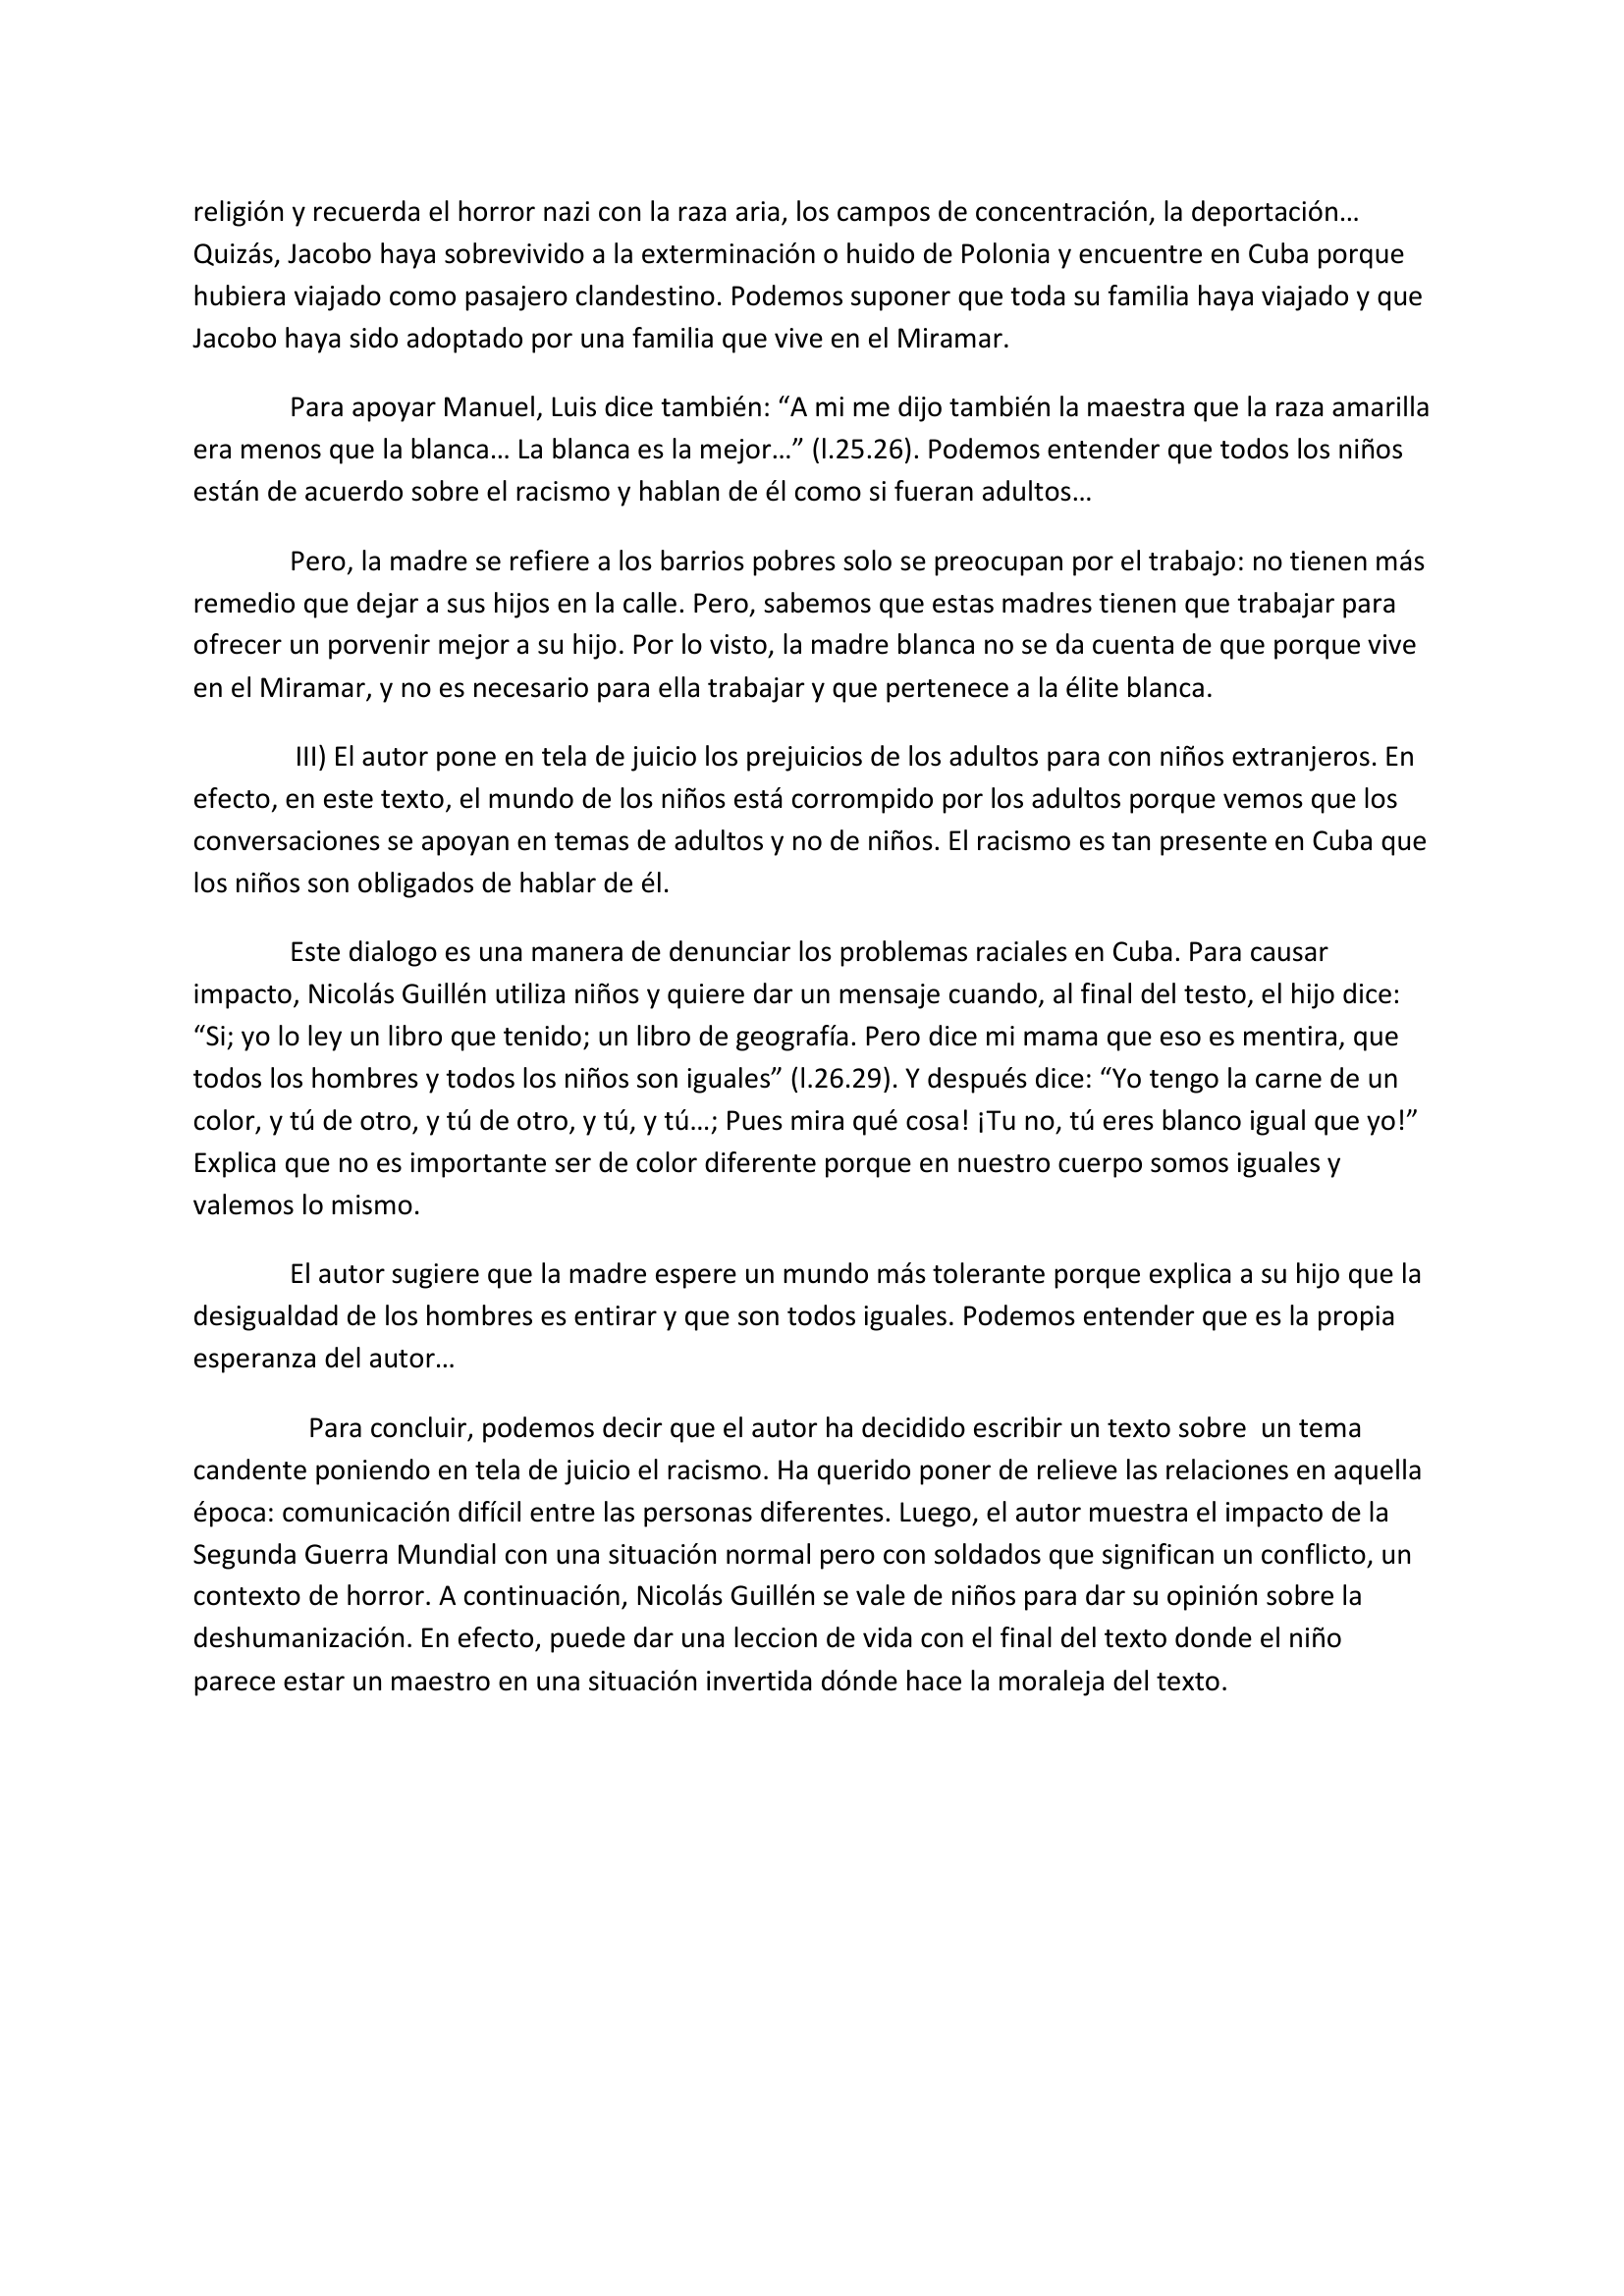 Prévisualisation du document TODOS LOS NIÑOS SON IGUALES de Nicolás Guillén